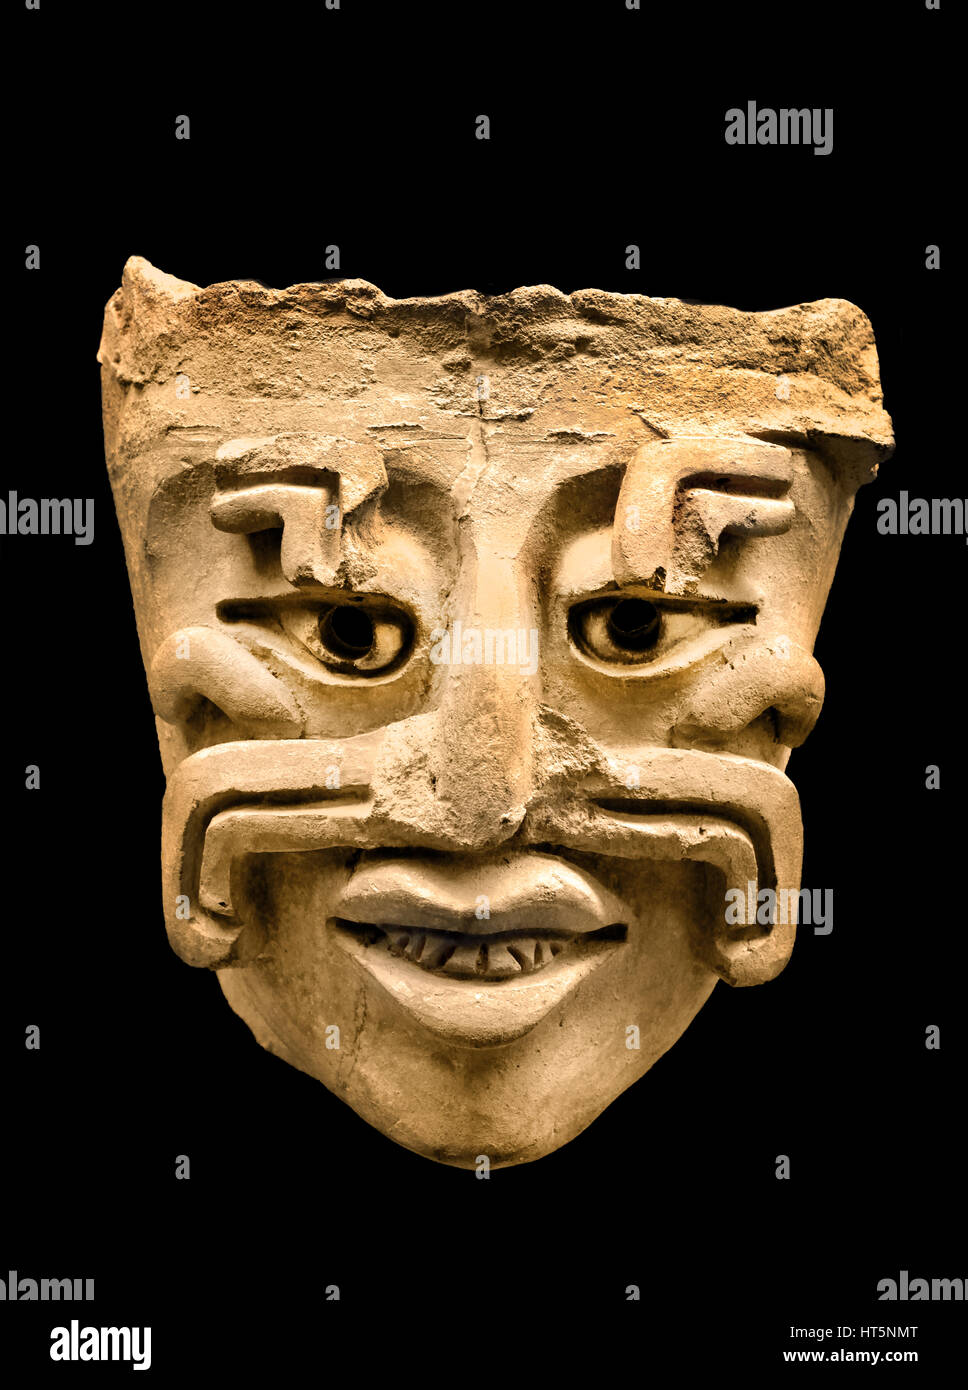 Mask Clay pot (fragment) 1410-1472 Mexico Zapotecs (Culture) 16 x 15.9 x 7.8 cm Zapotecs  Zapotec Civilization  Pre Columbian Mesoamerican  Central America  500 BC  - 900 AD American . Stock Photo